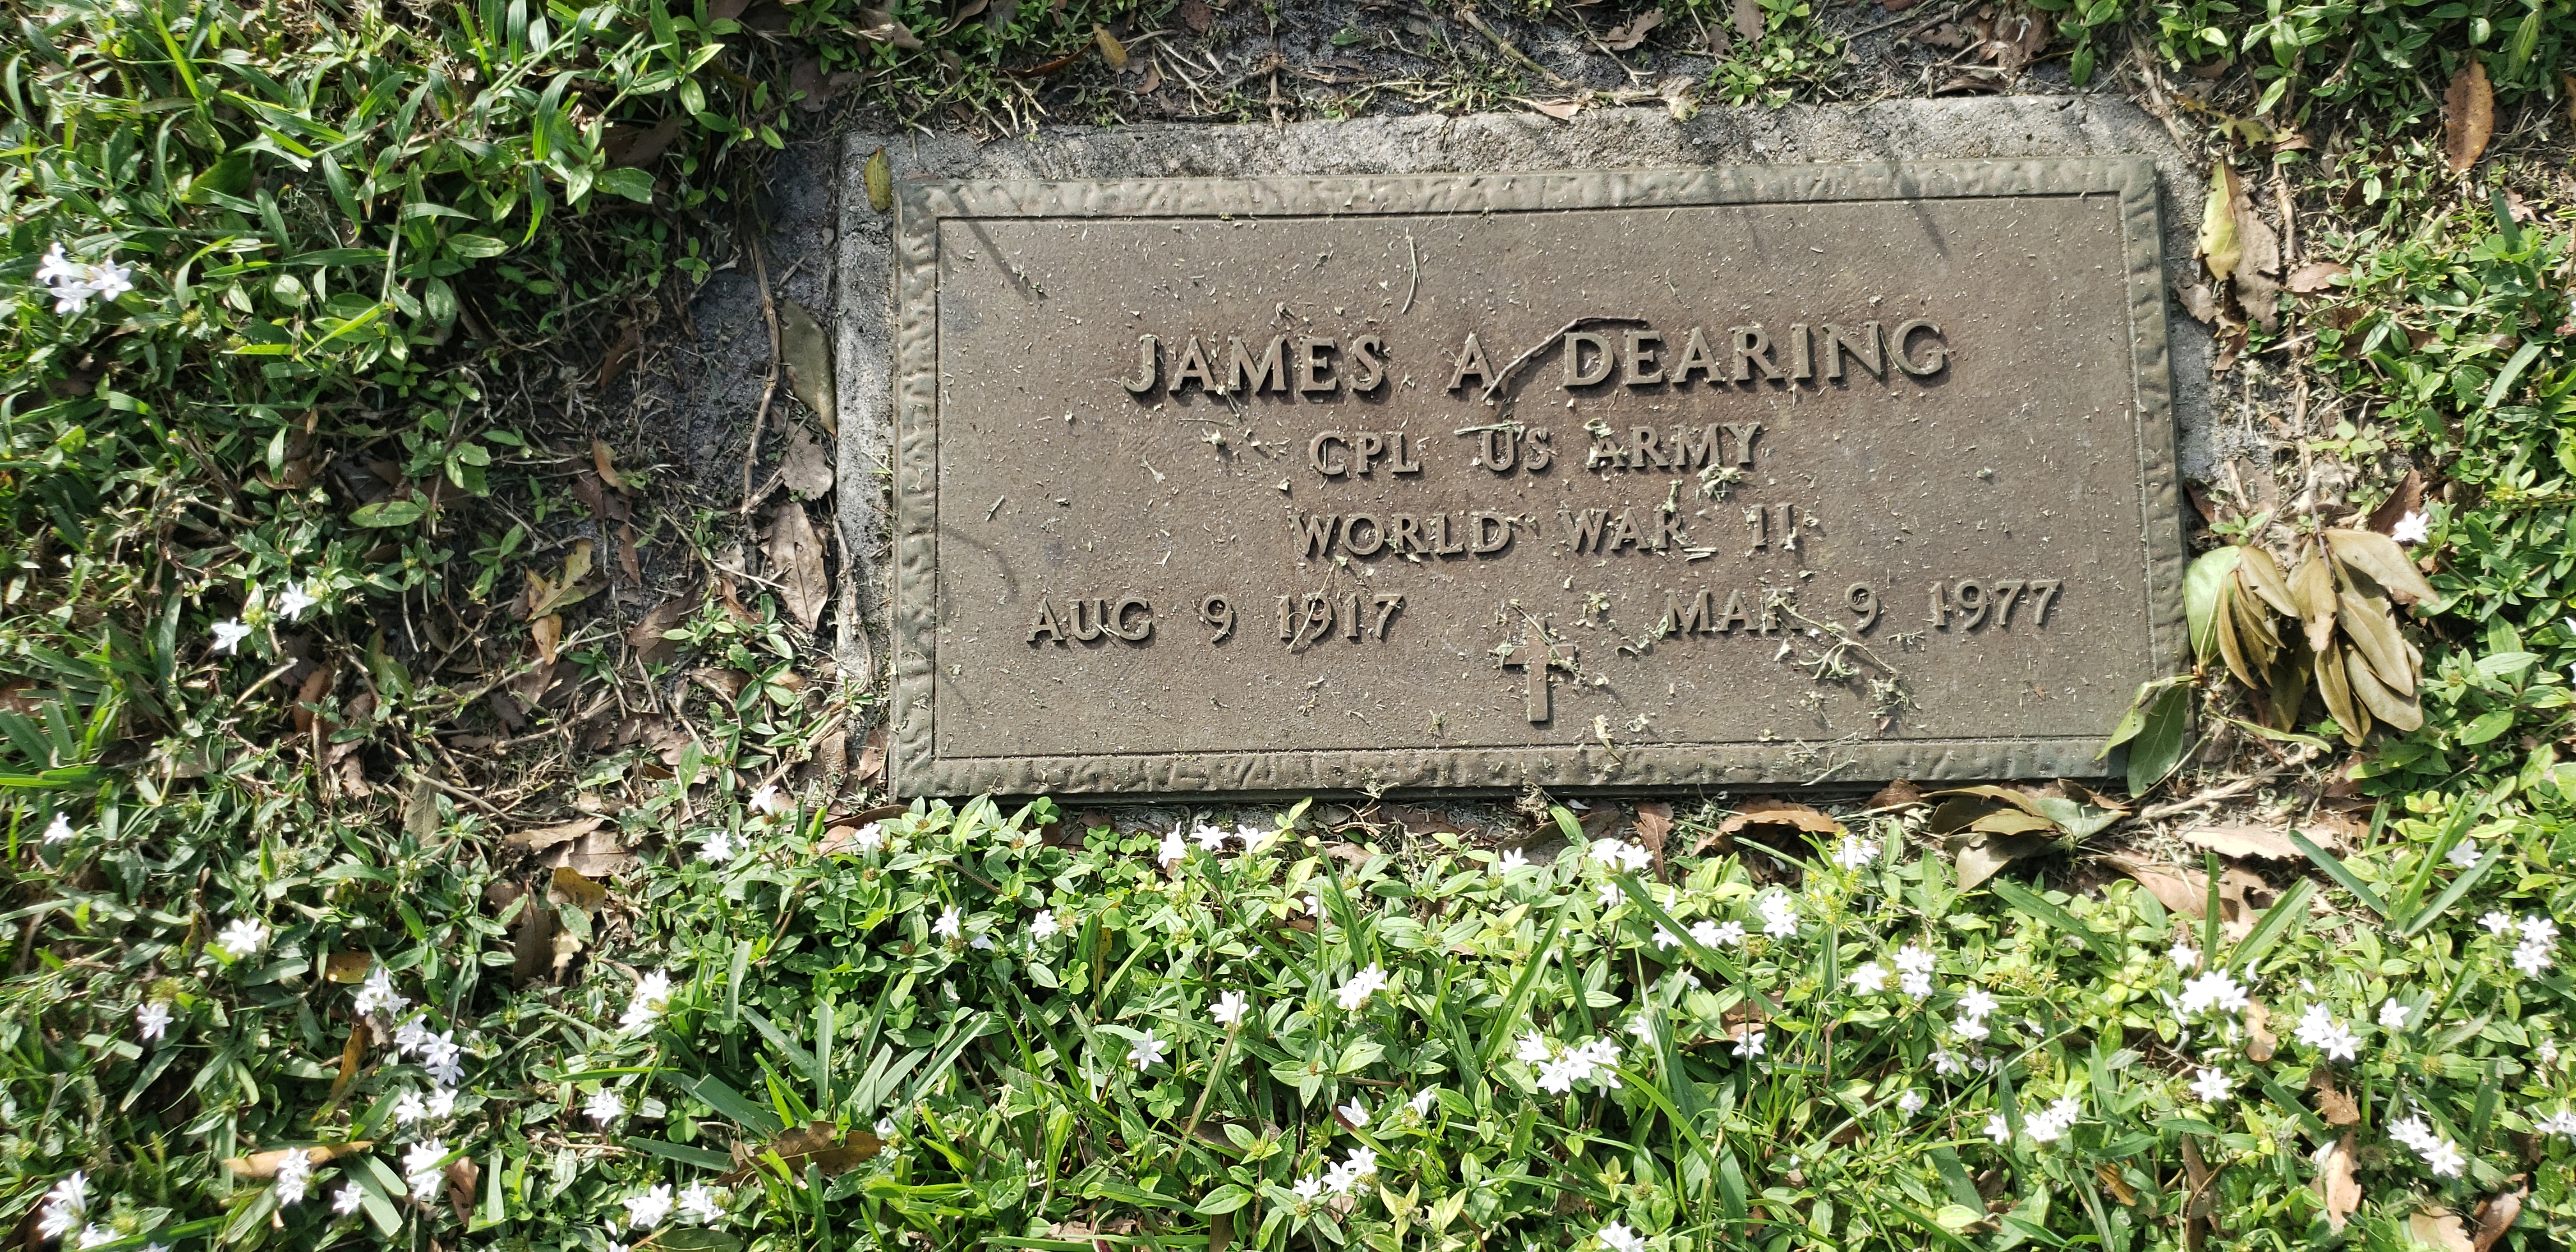 James A Dearing